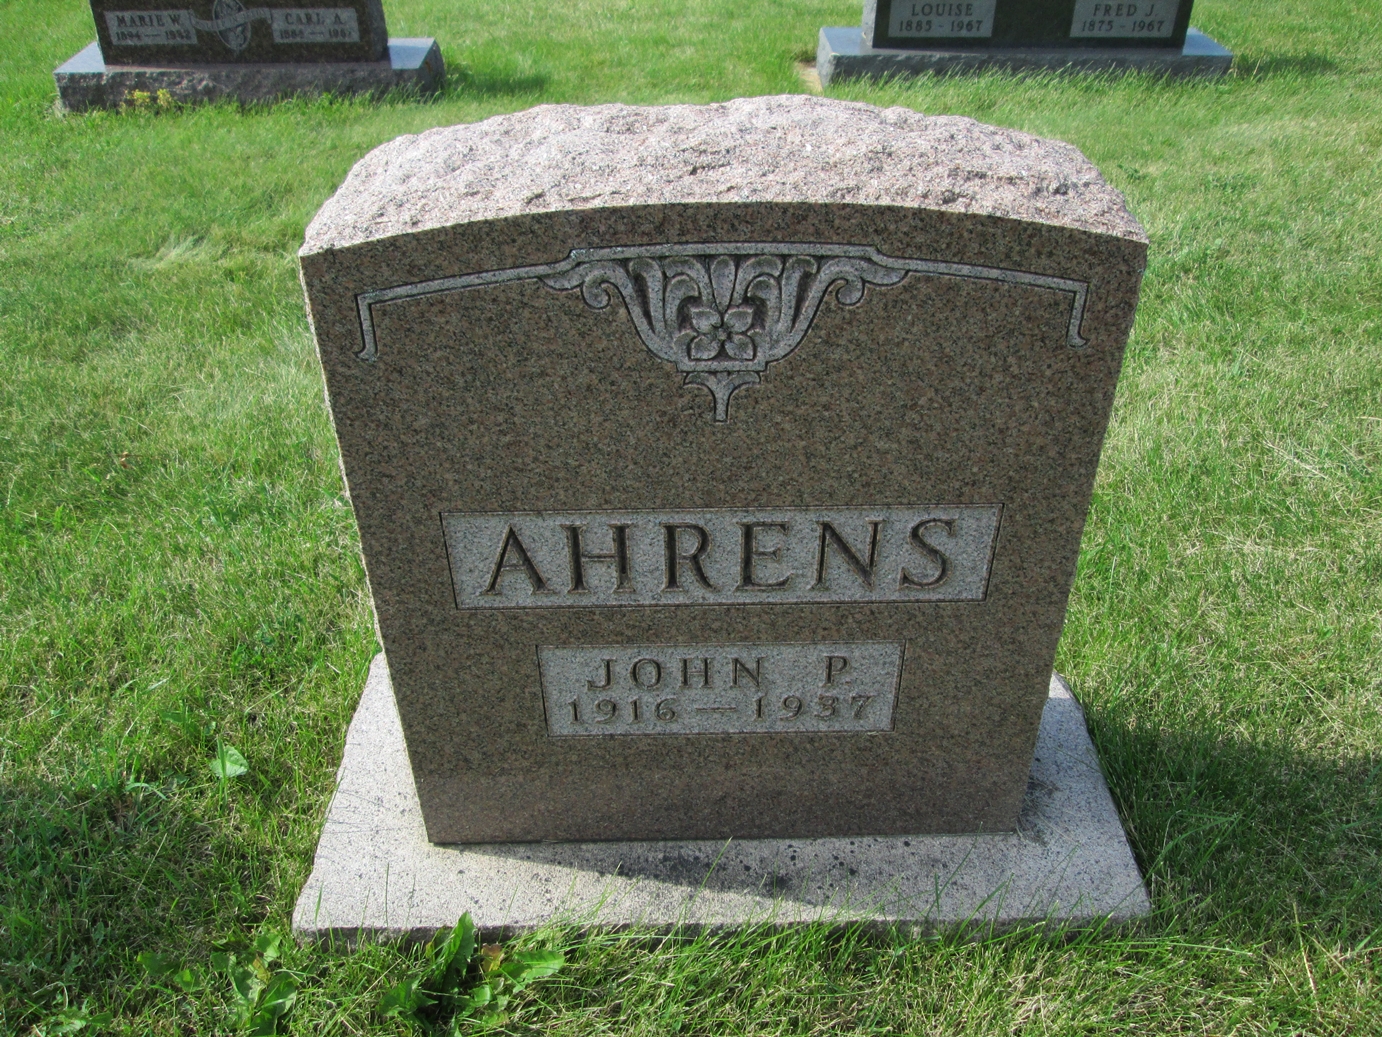 John P. Ahrens